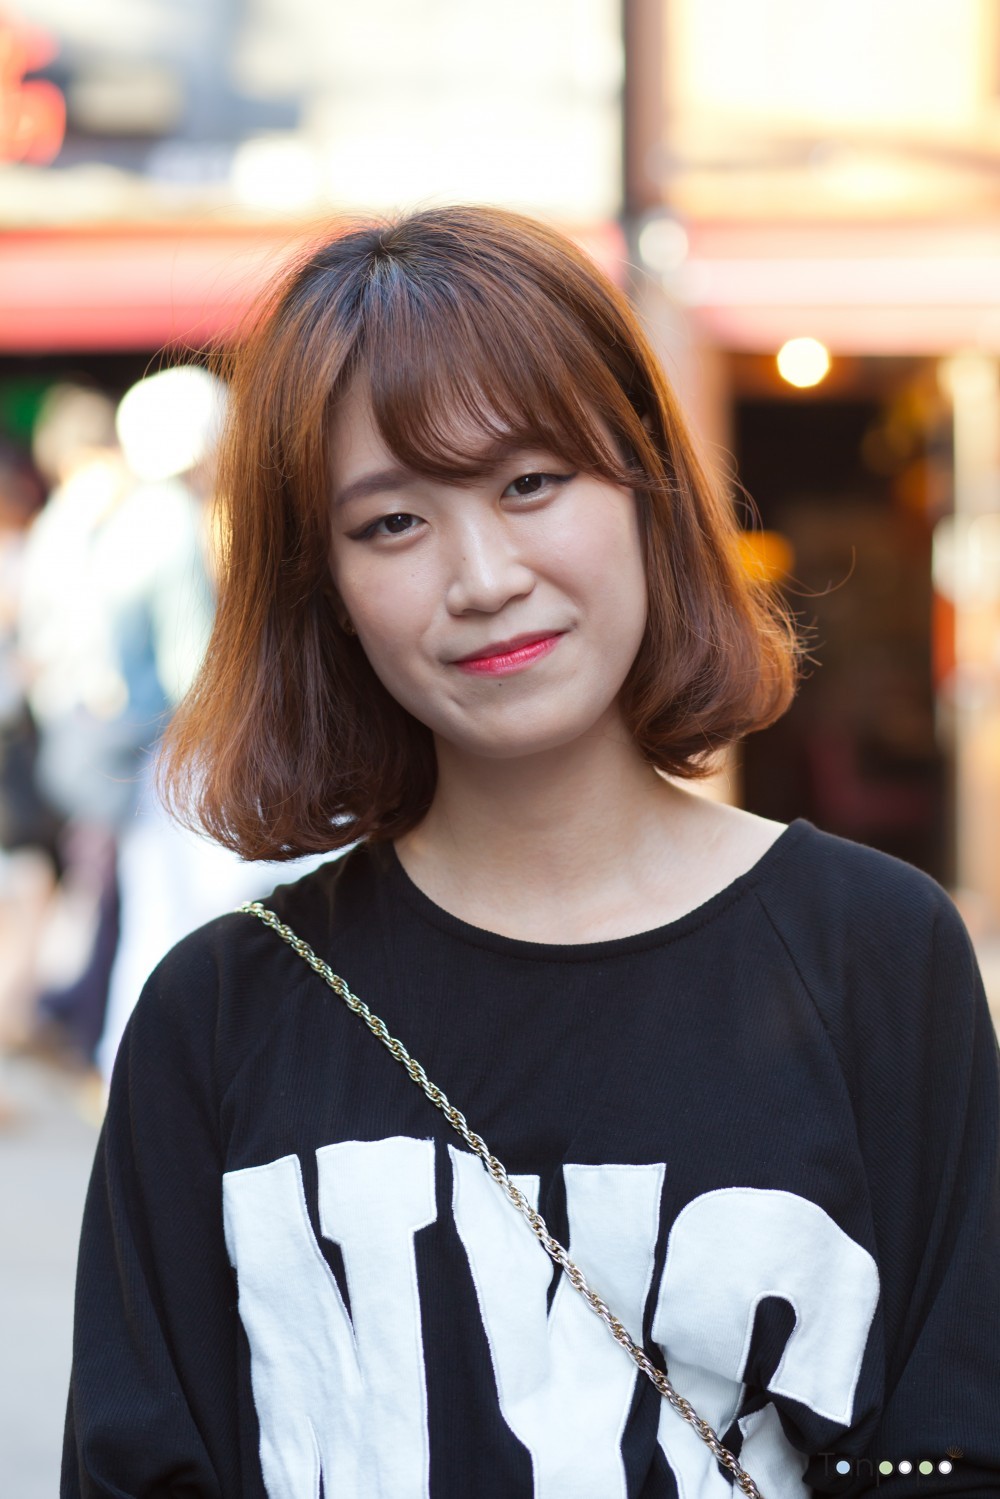 韓国人の髪型カイカイch 日韓交流掲示板サイト